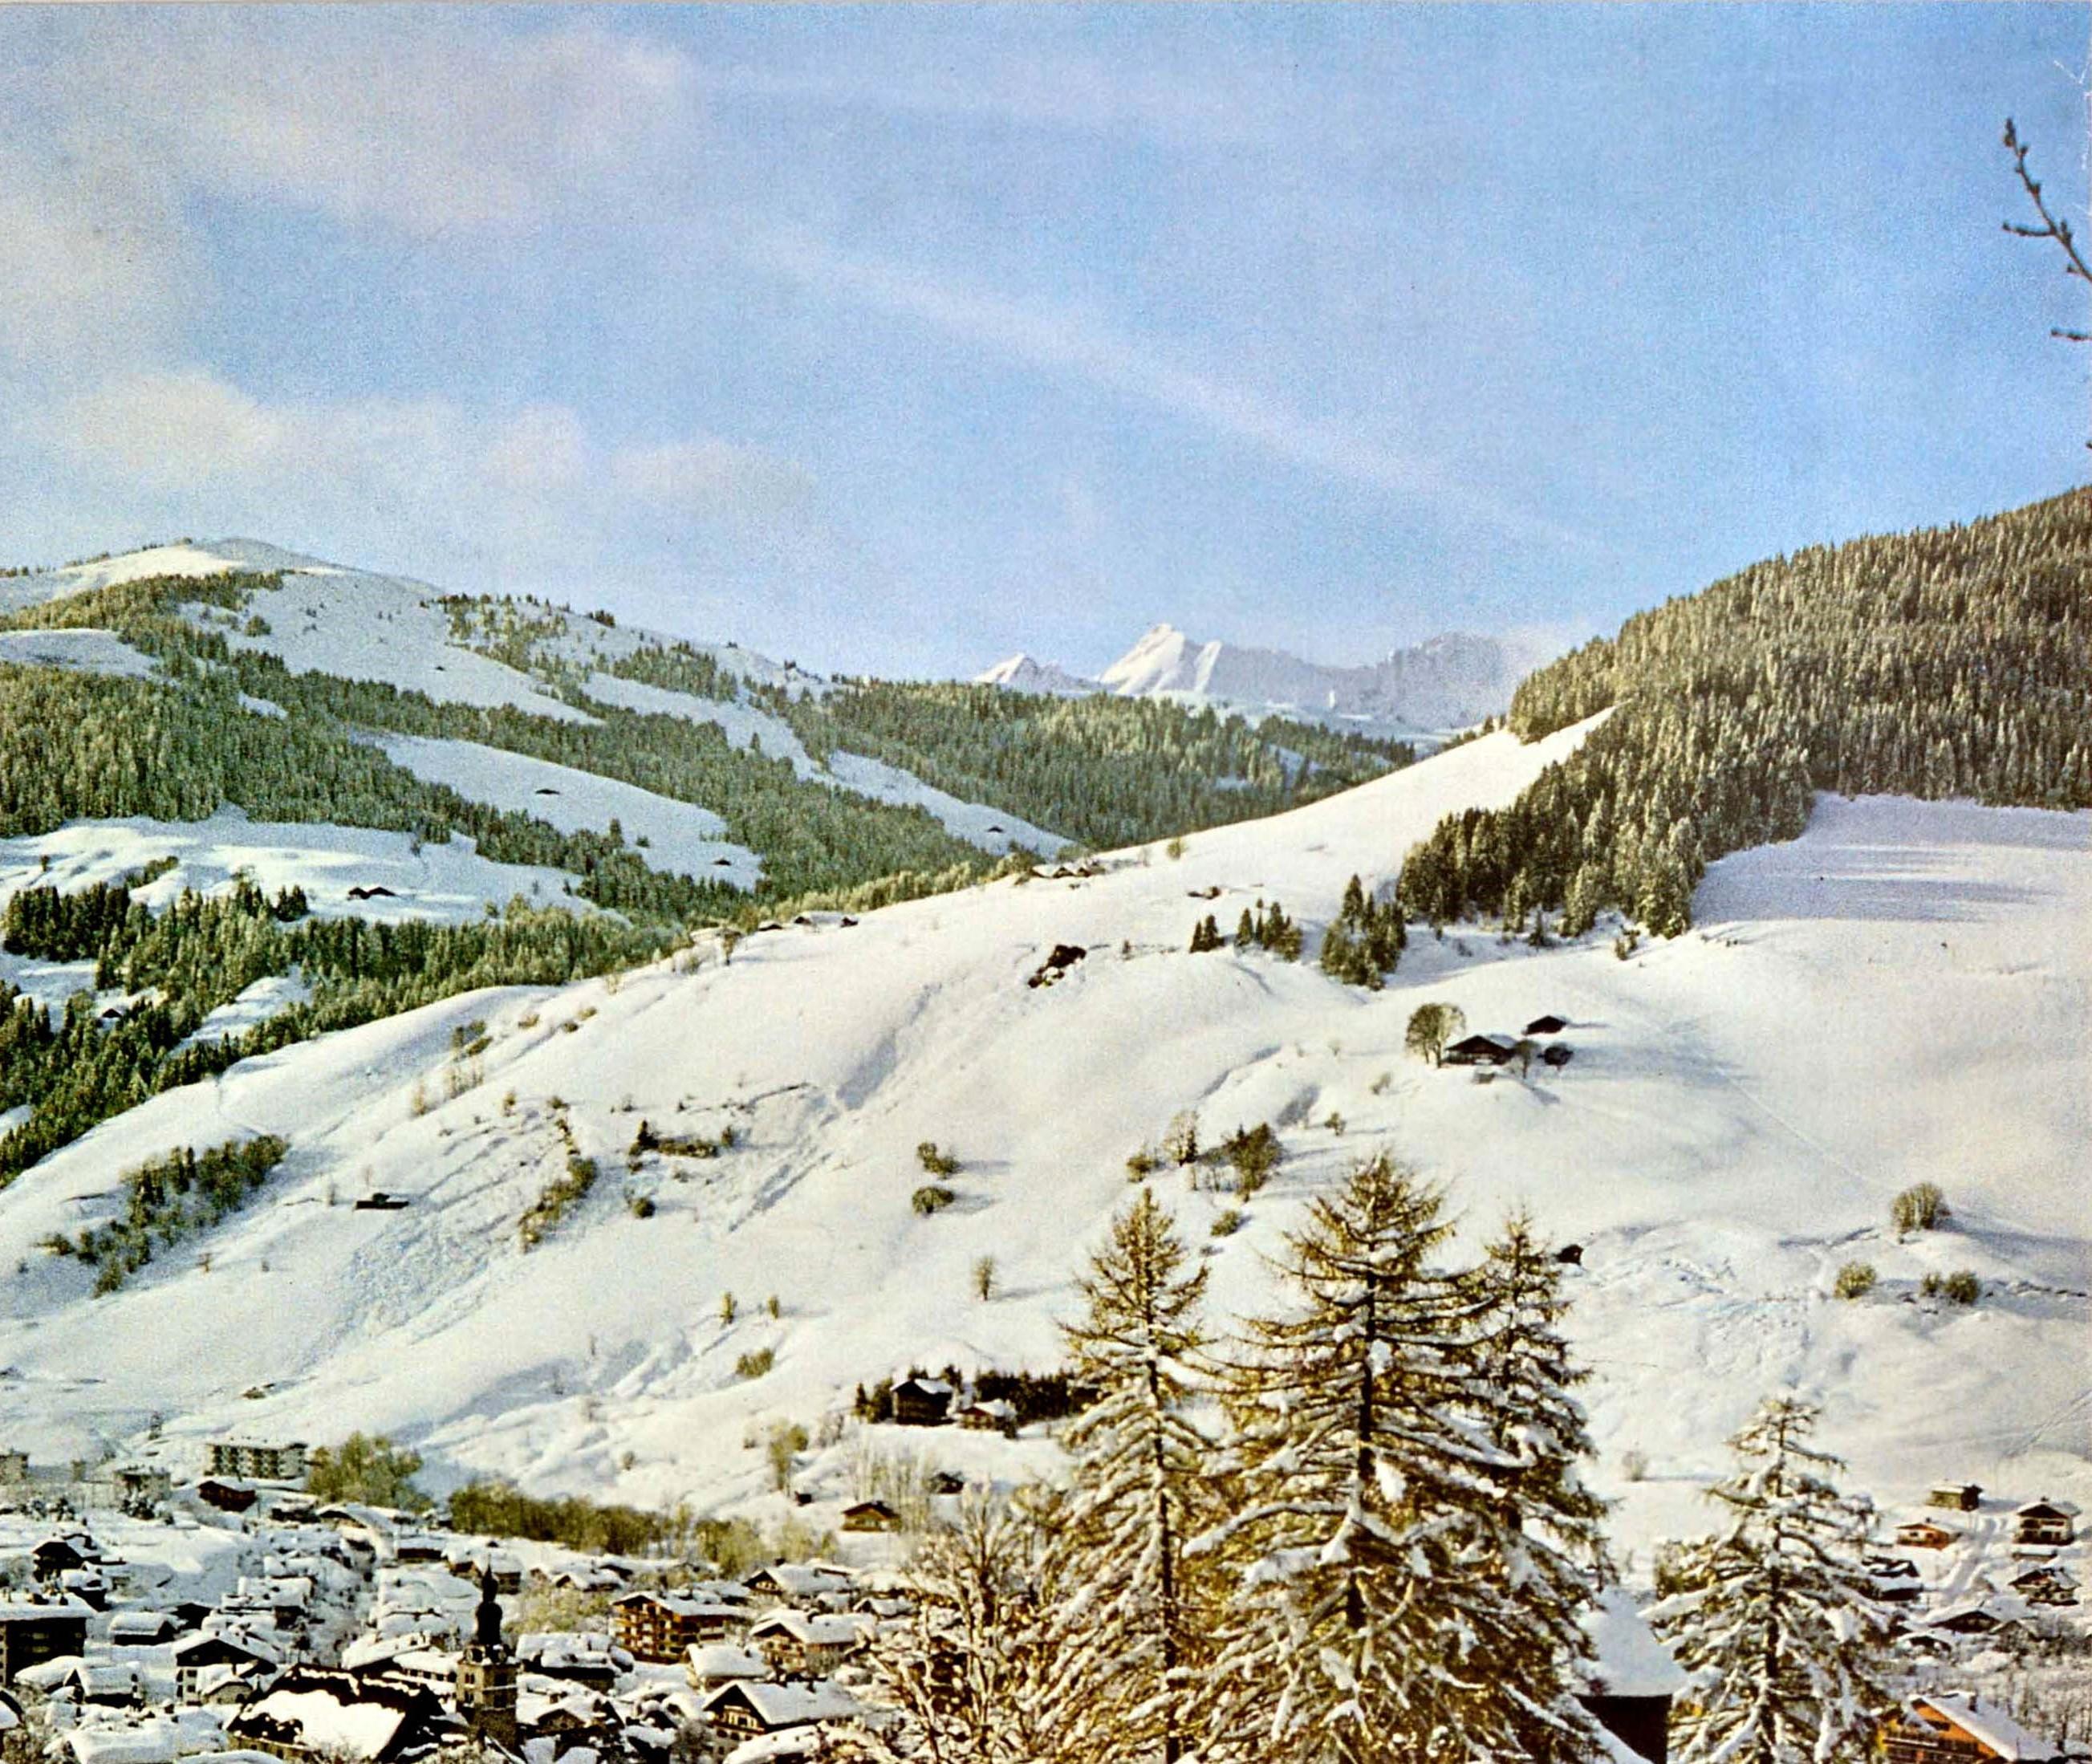 Original-Reiseplakat von Megeve in Frankreich mit einer Fotografie des Dorfes im Winter mit schneebedeckten Chalets und Menschen, die einen Hügel hinuntergehen, mit den verschneiten Bäumen und Berggipfeln am Horizont. Das beliebte Skidorf Megeve